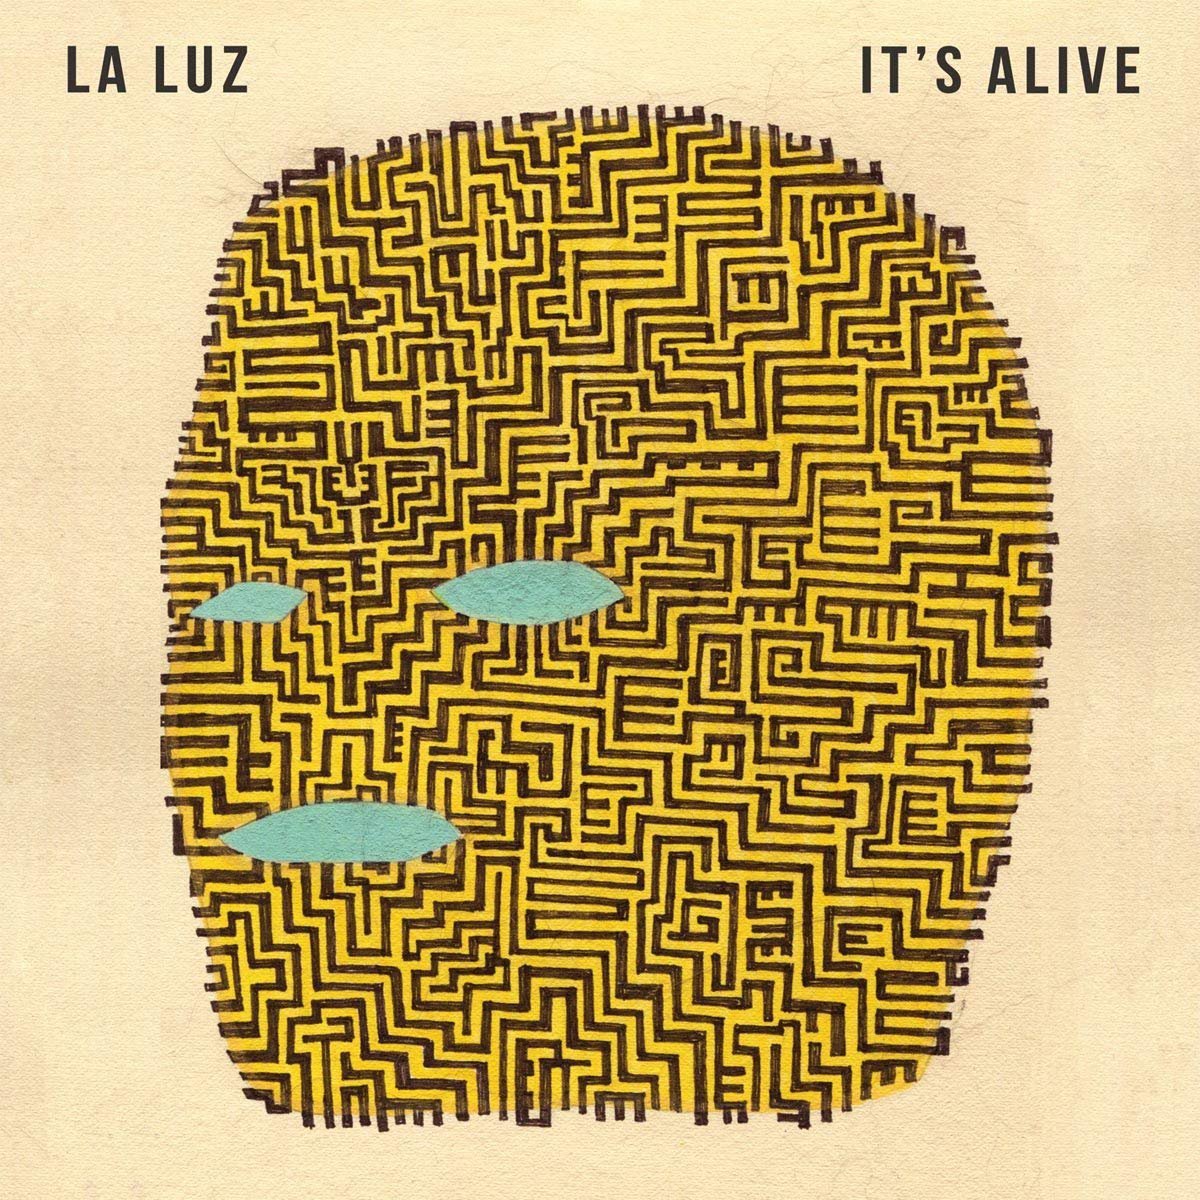 La Luz "It's Alive" LP (2013)